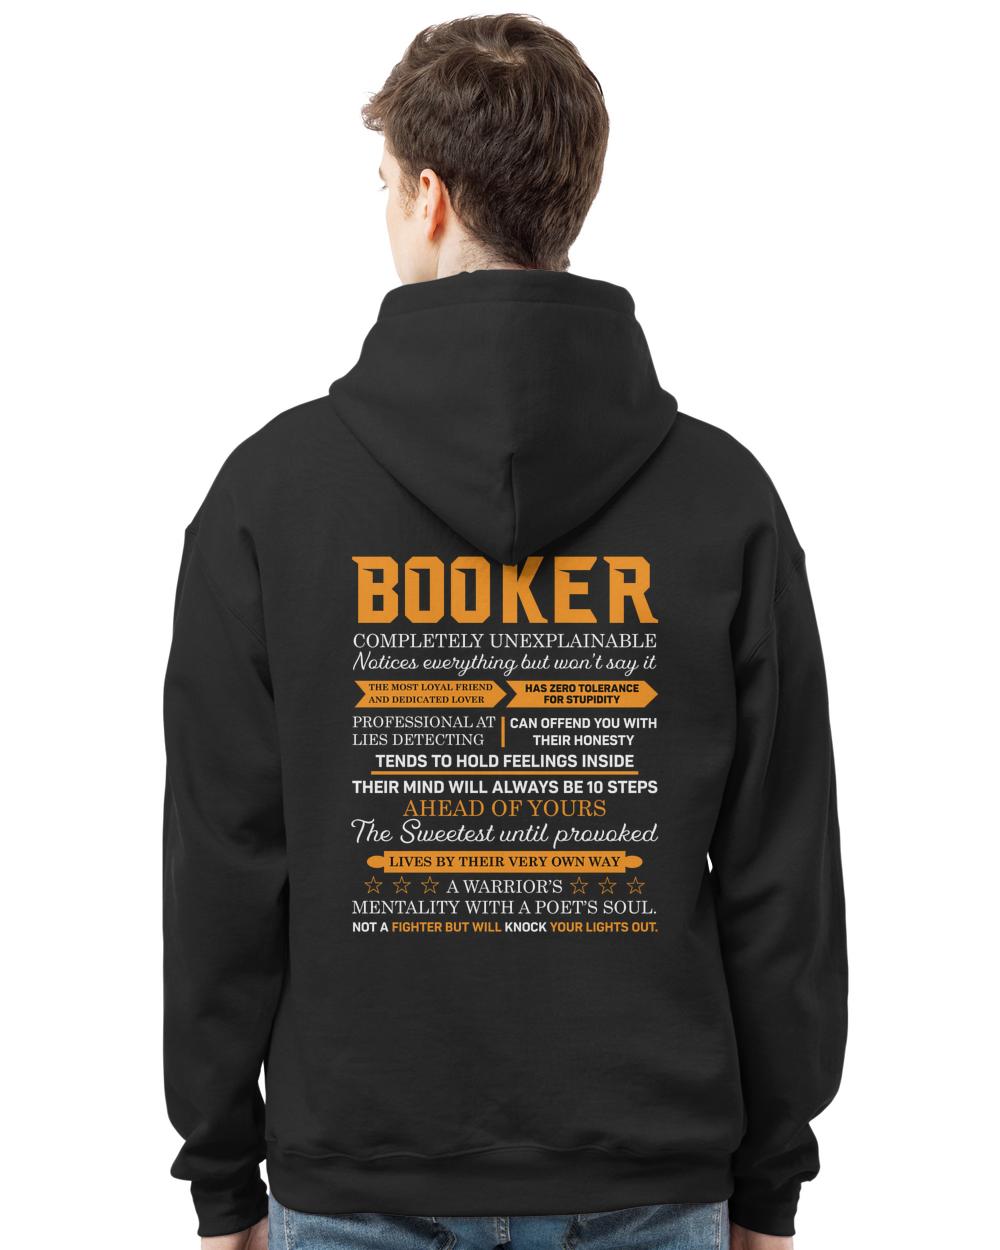 BOOKER-13K-N1-01